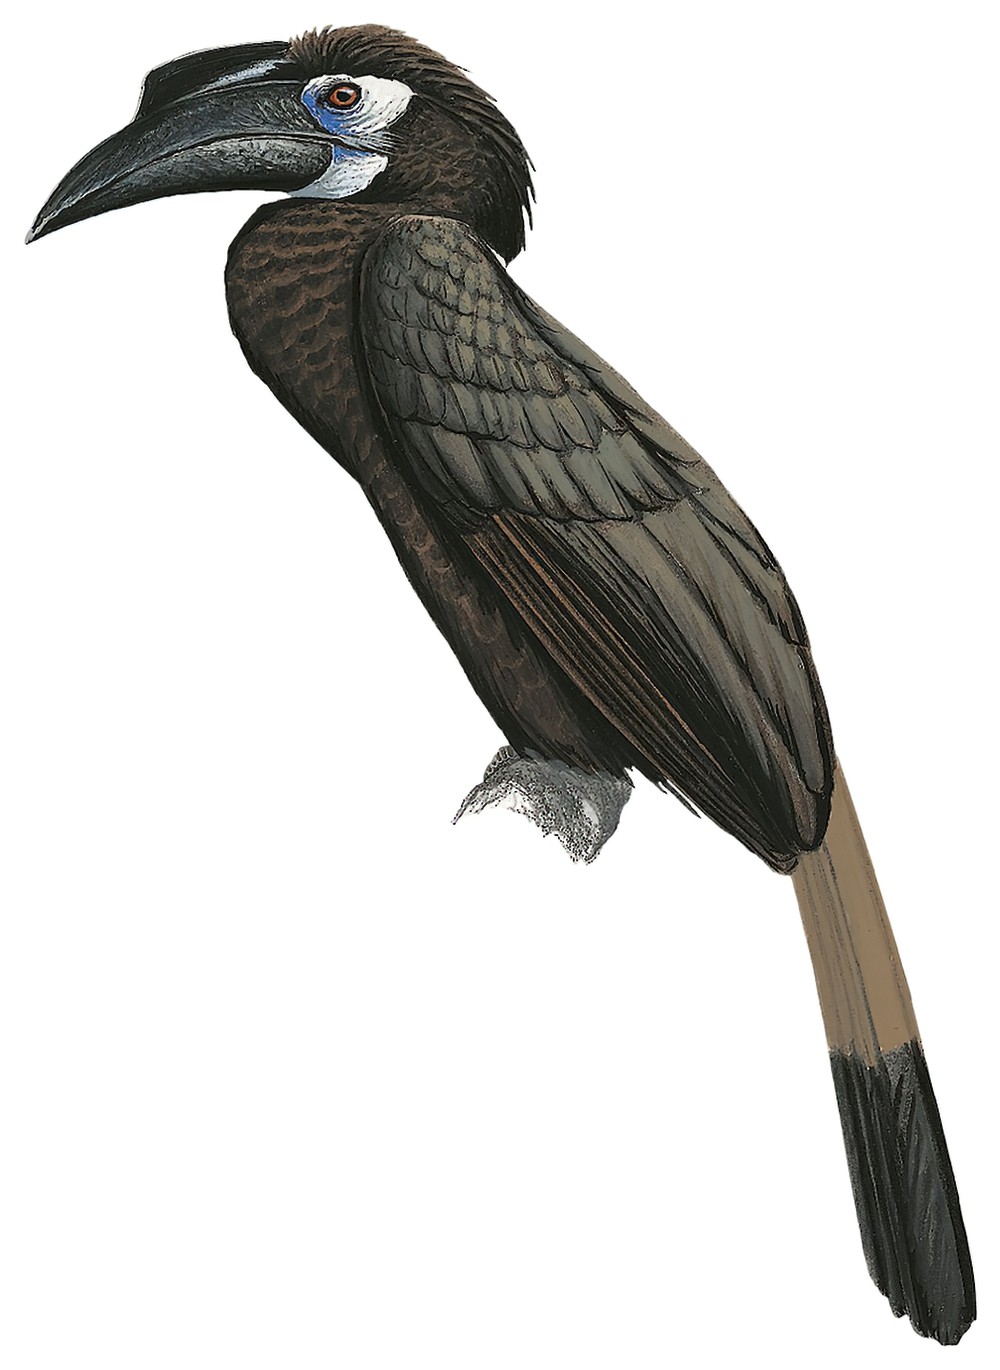 Bushy-crested Hornbill / Anorrhinus galeritus